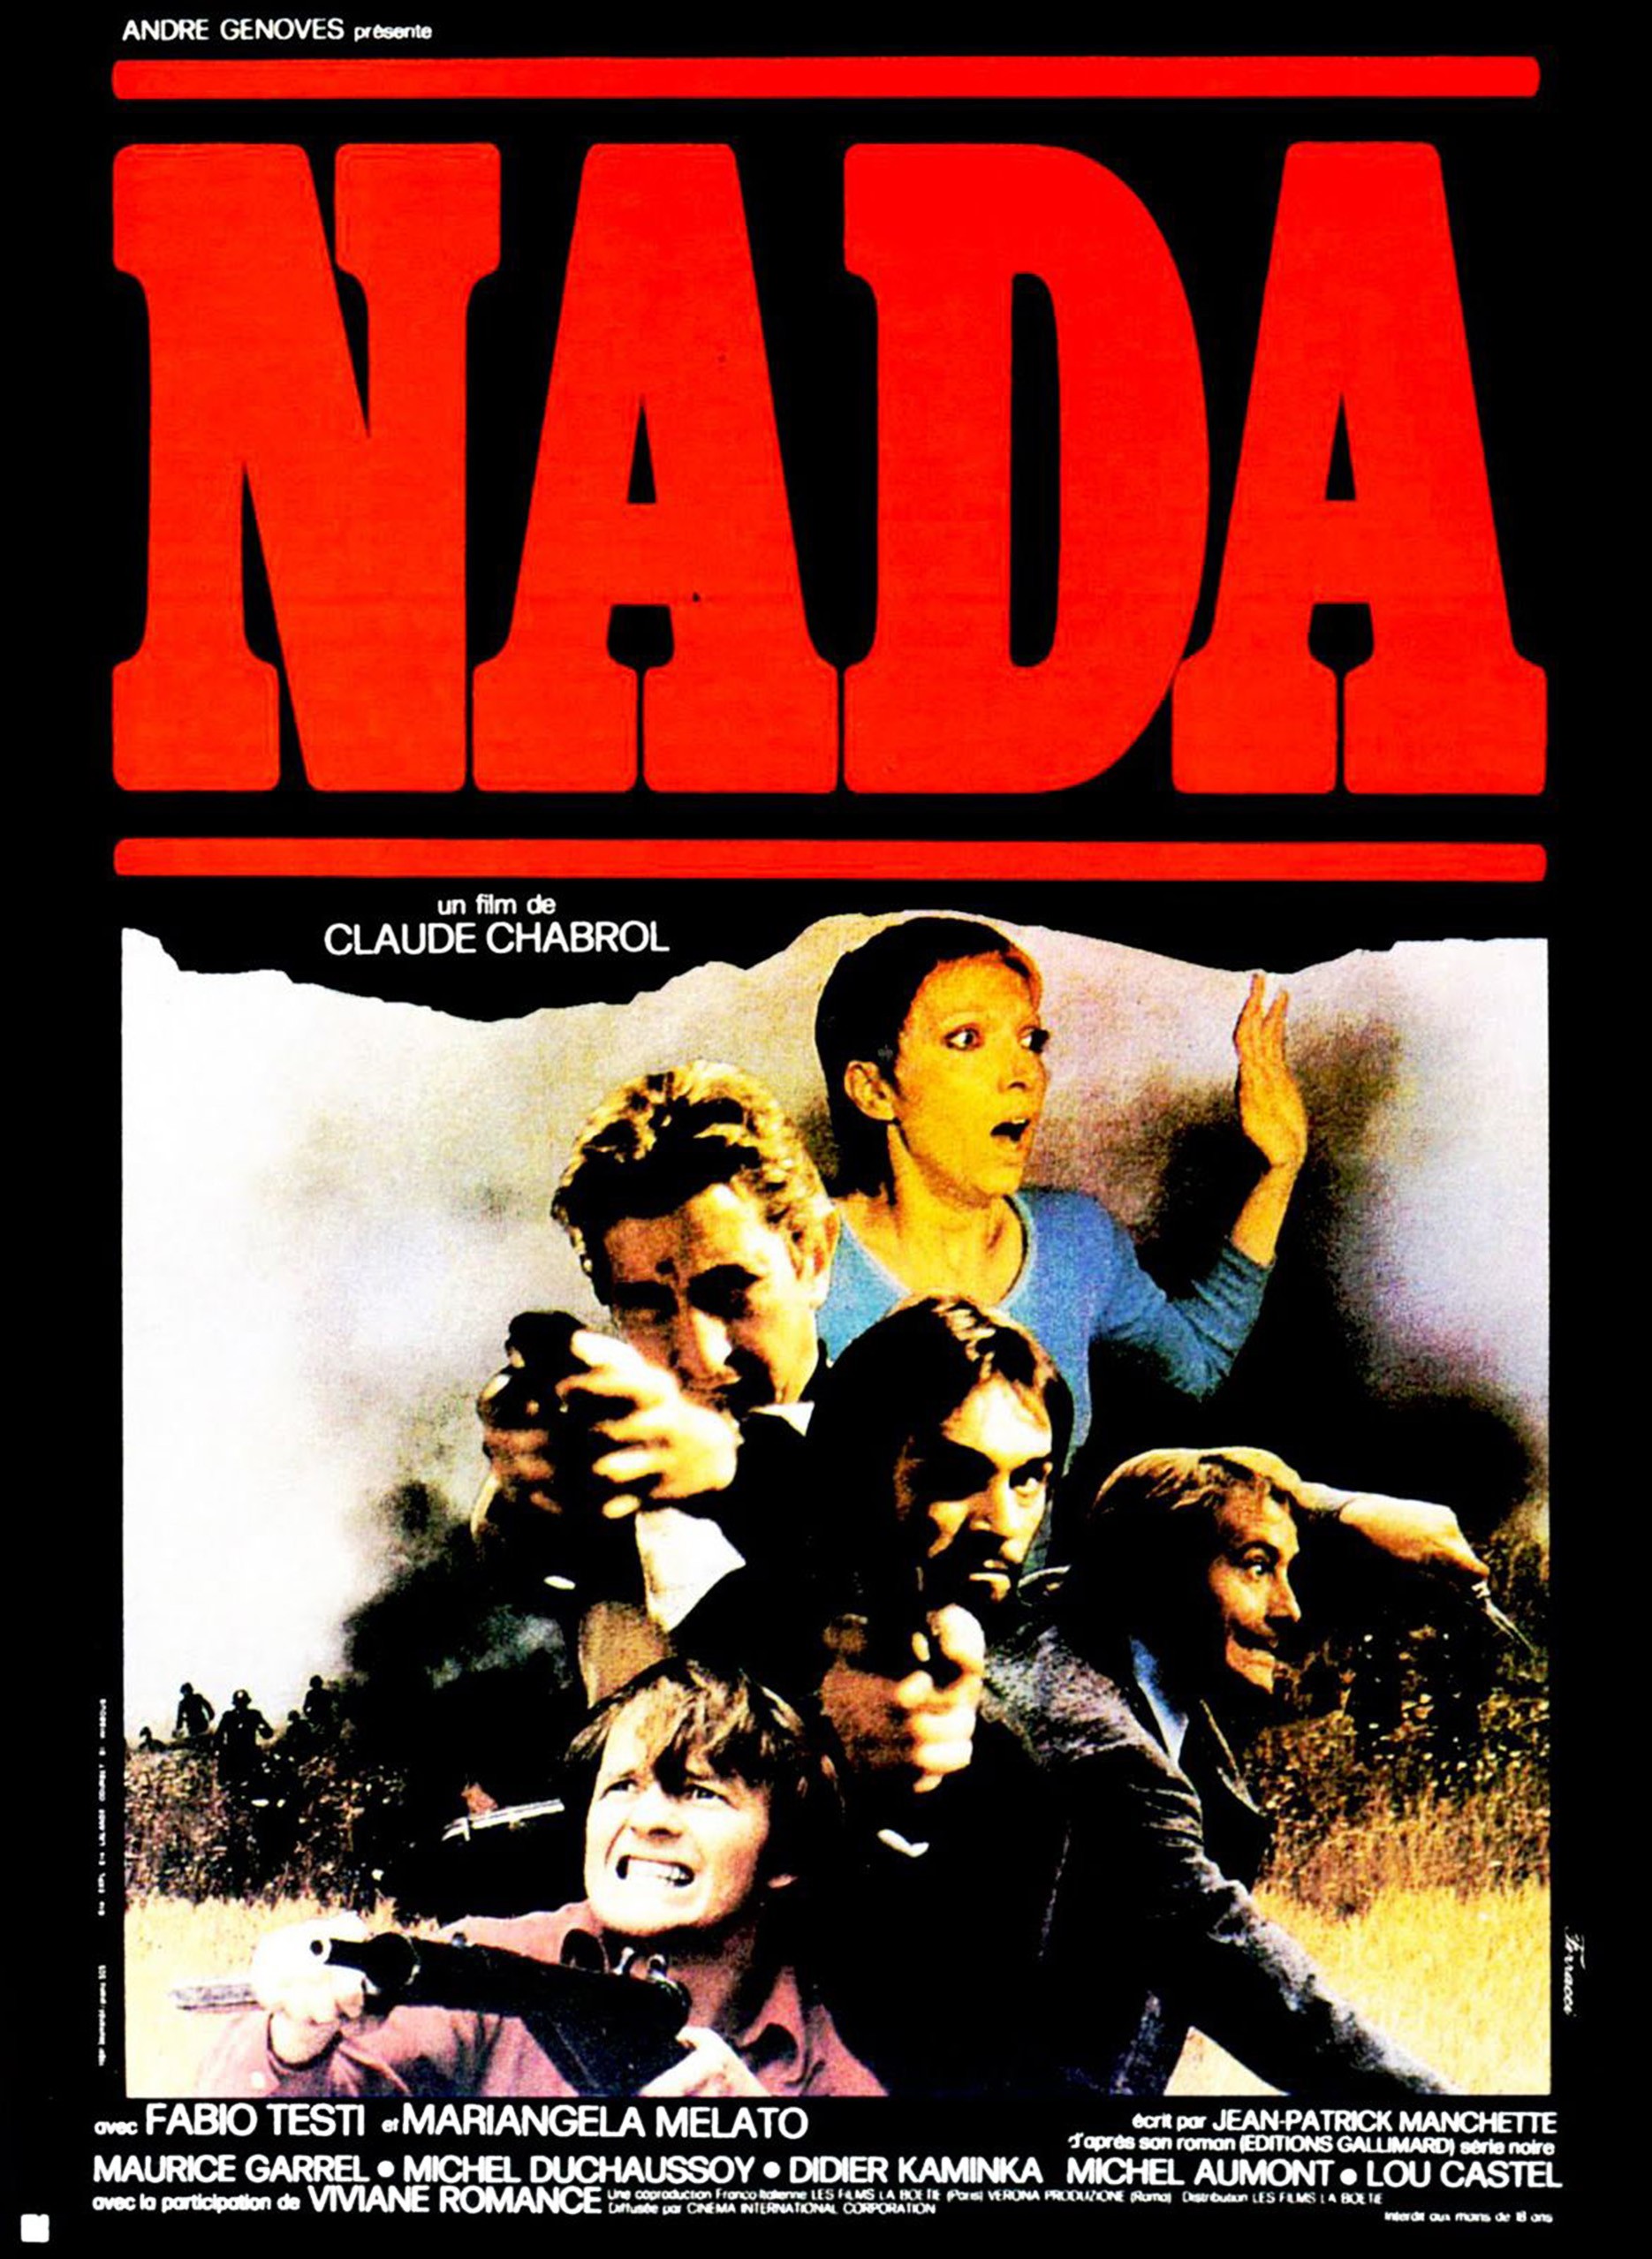 Affiche de "Nada" de Claude Chabrol (1974), qdqpté du roman éponyme de Jean-Patrick Manchette. © D.R.